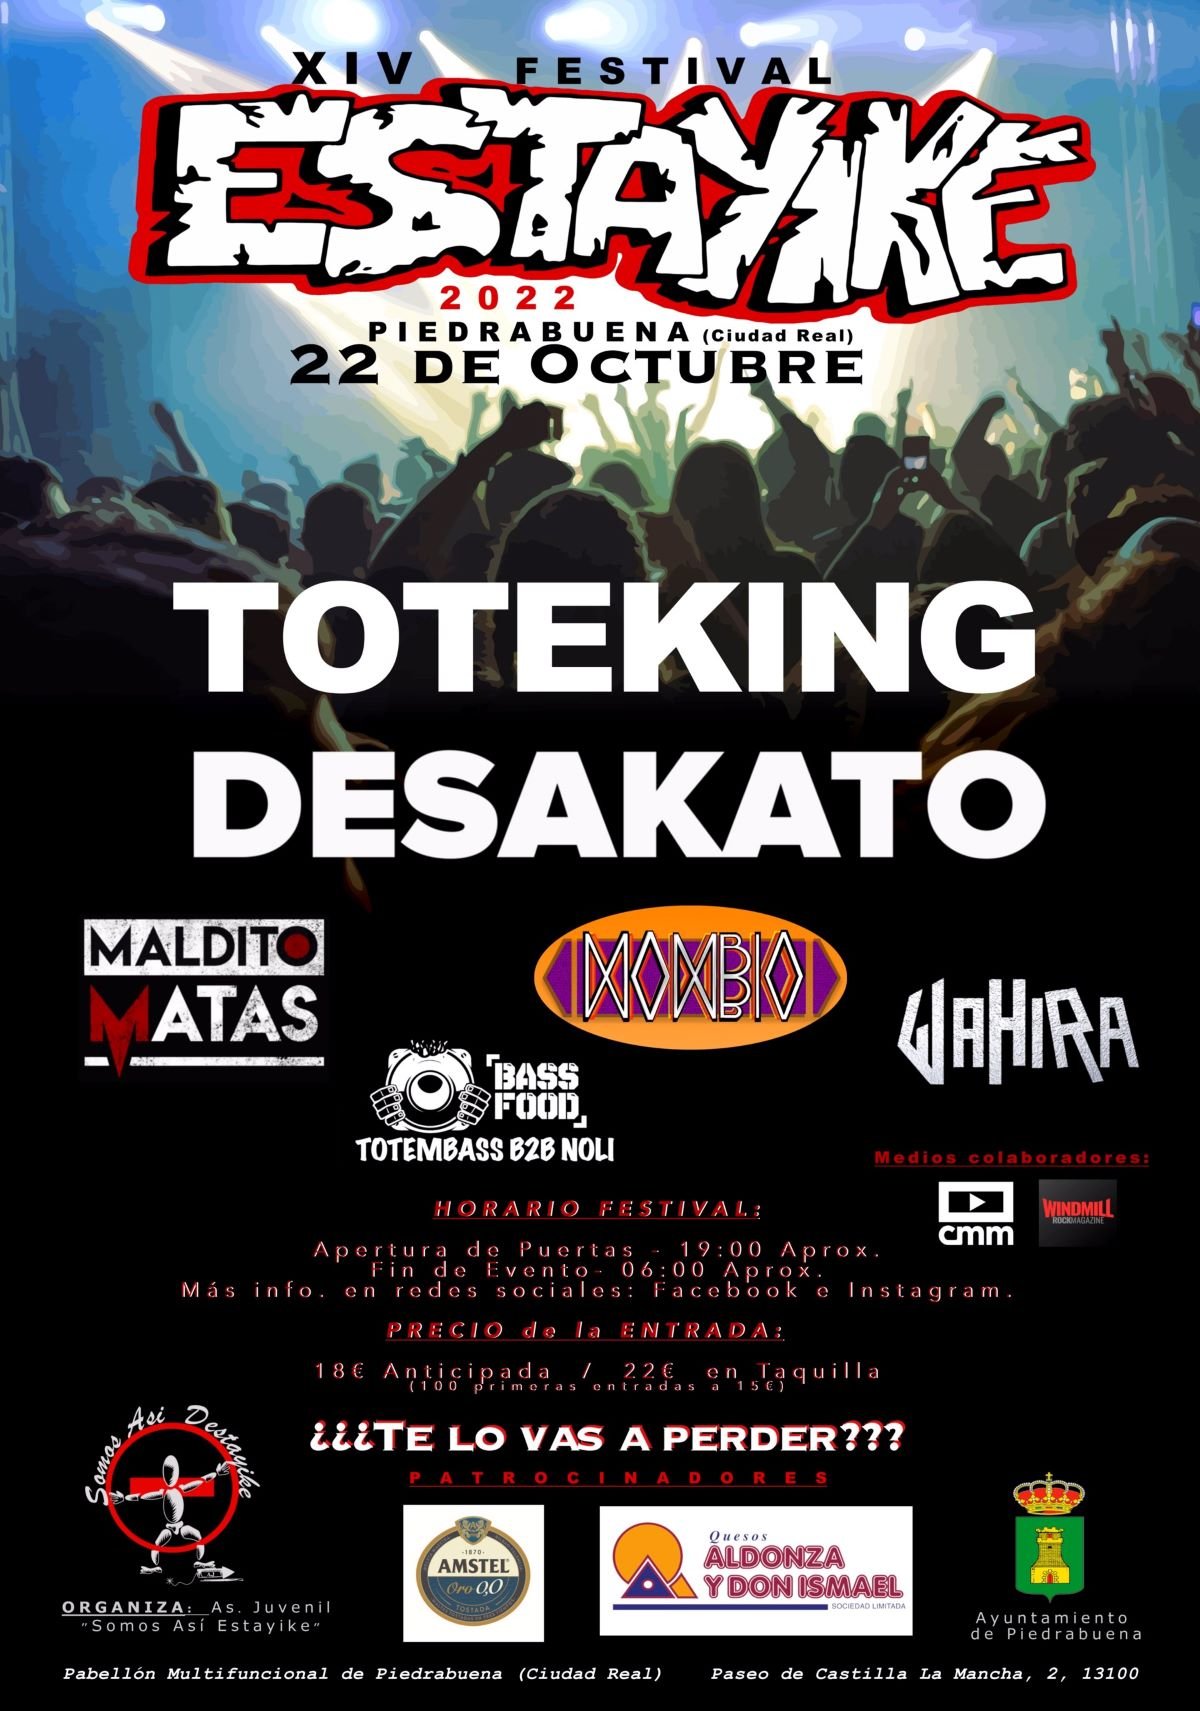 Desakato y Toteking actuarán en el festival 'Estayike' de Piedrabuena el próximo 22 de octubre